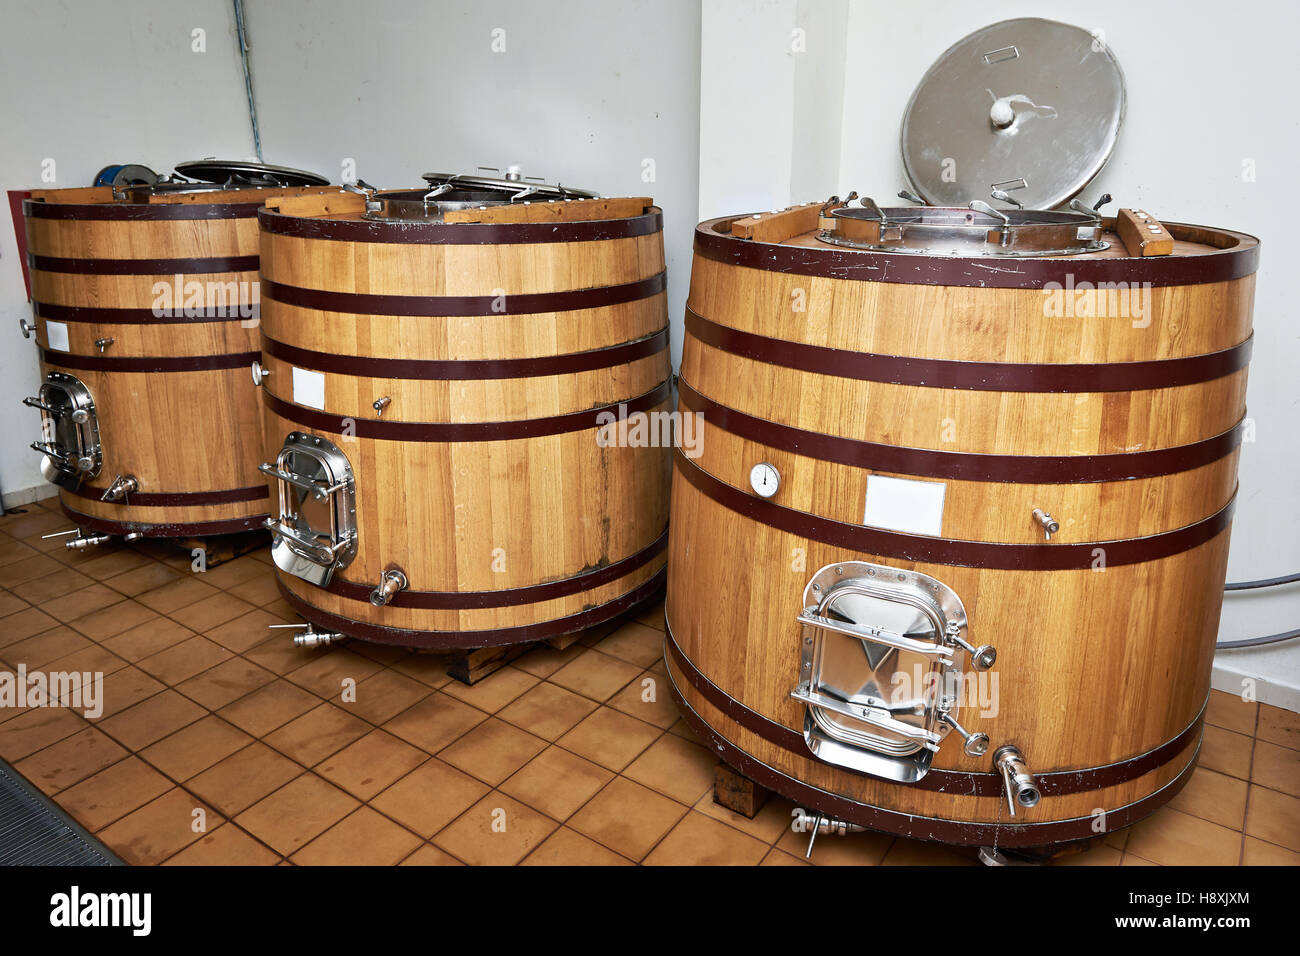 Vasca in legno Barili per invecchiare il vino presso la cantina Foto Stock